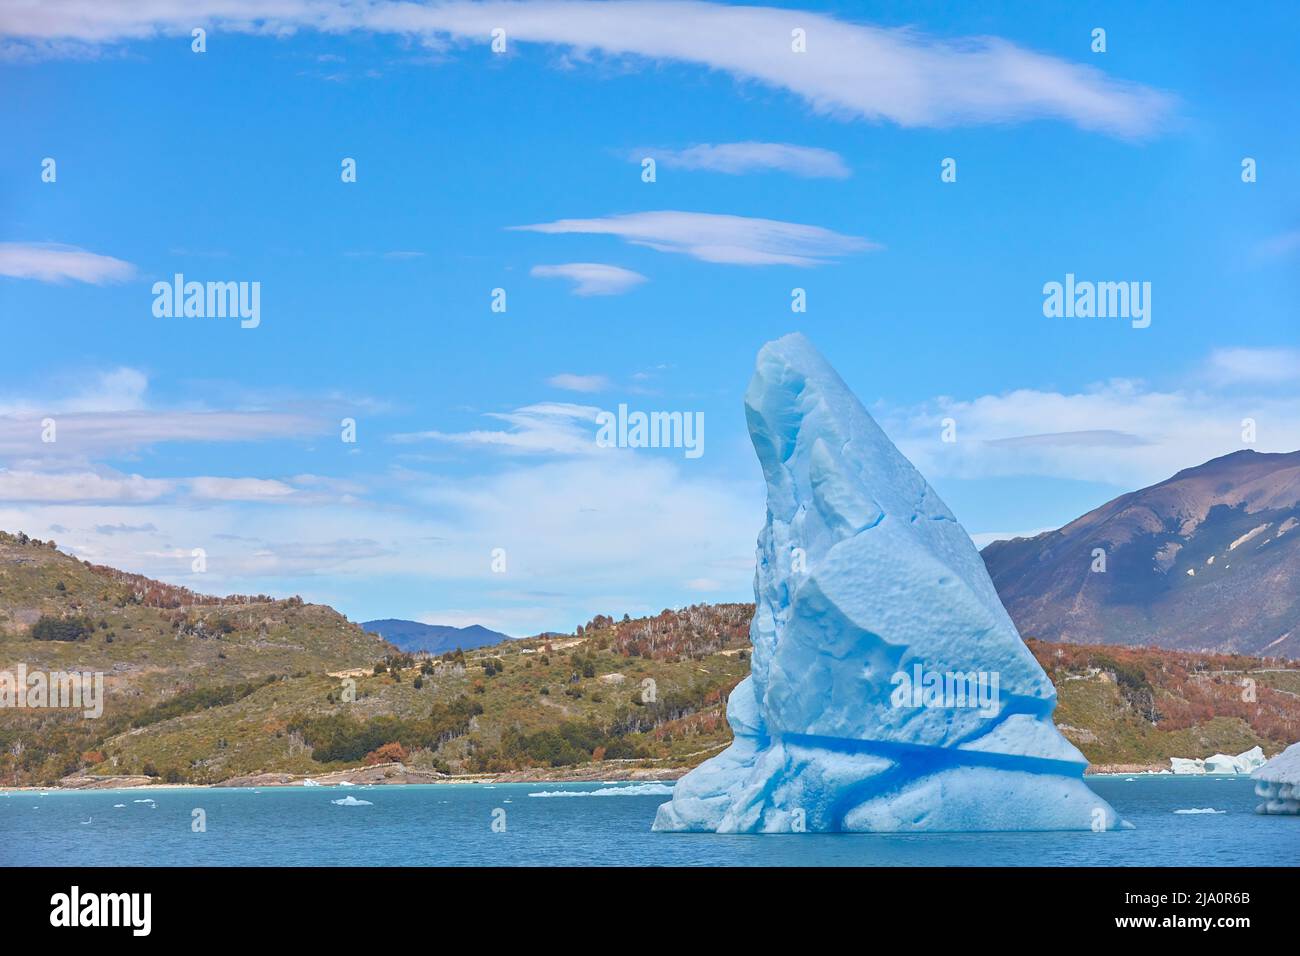 A big blue iceberg detached from the Perito Moreno glacier in the 'Canal de los Tempanos' bay, Los Glaciares National Park, Santa Cruz, Argentina. Stock Photo